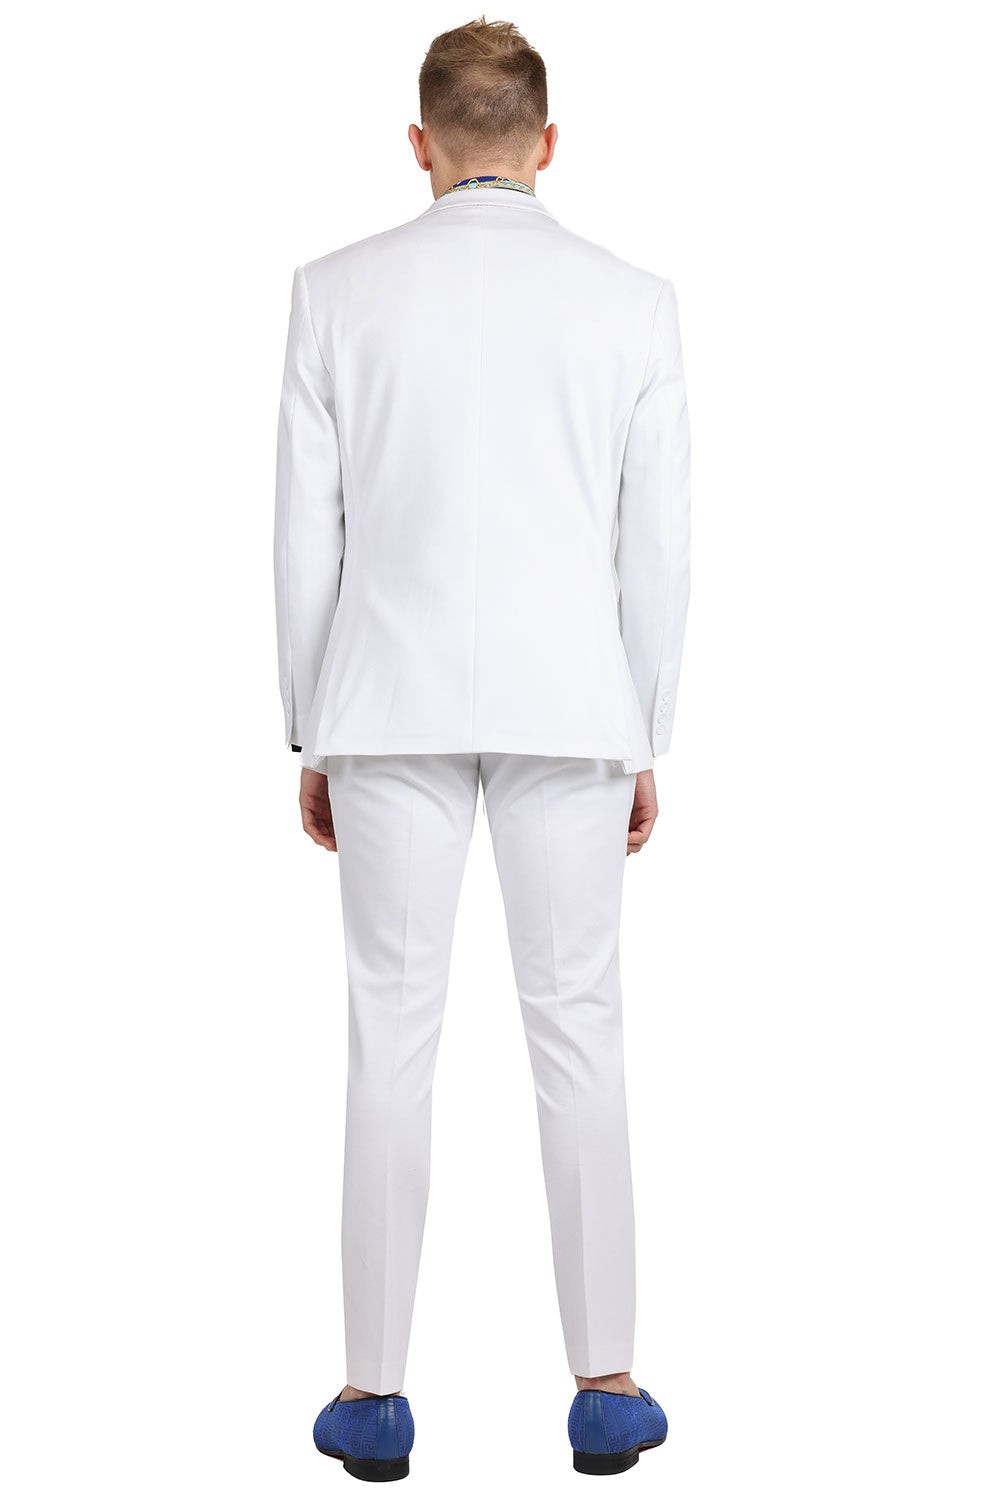 BARABAS Men's Brushed Cotton Notched Lapel Matt Suit 3SU02 White